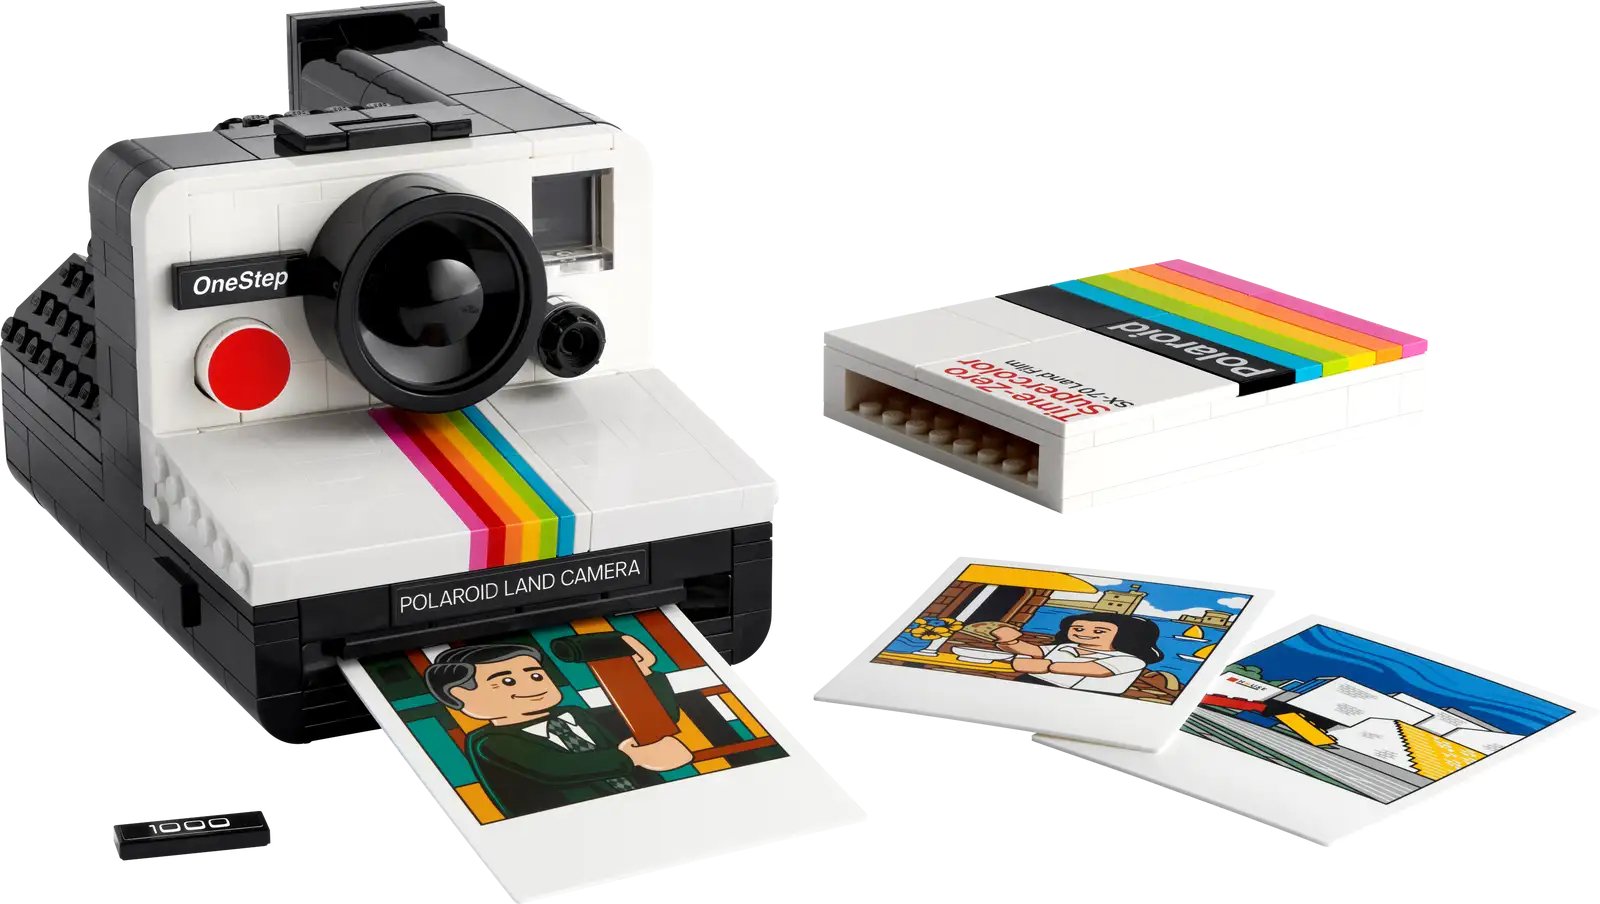 Get nostalgic with this Lego Polaroid camera which 'prints' photos